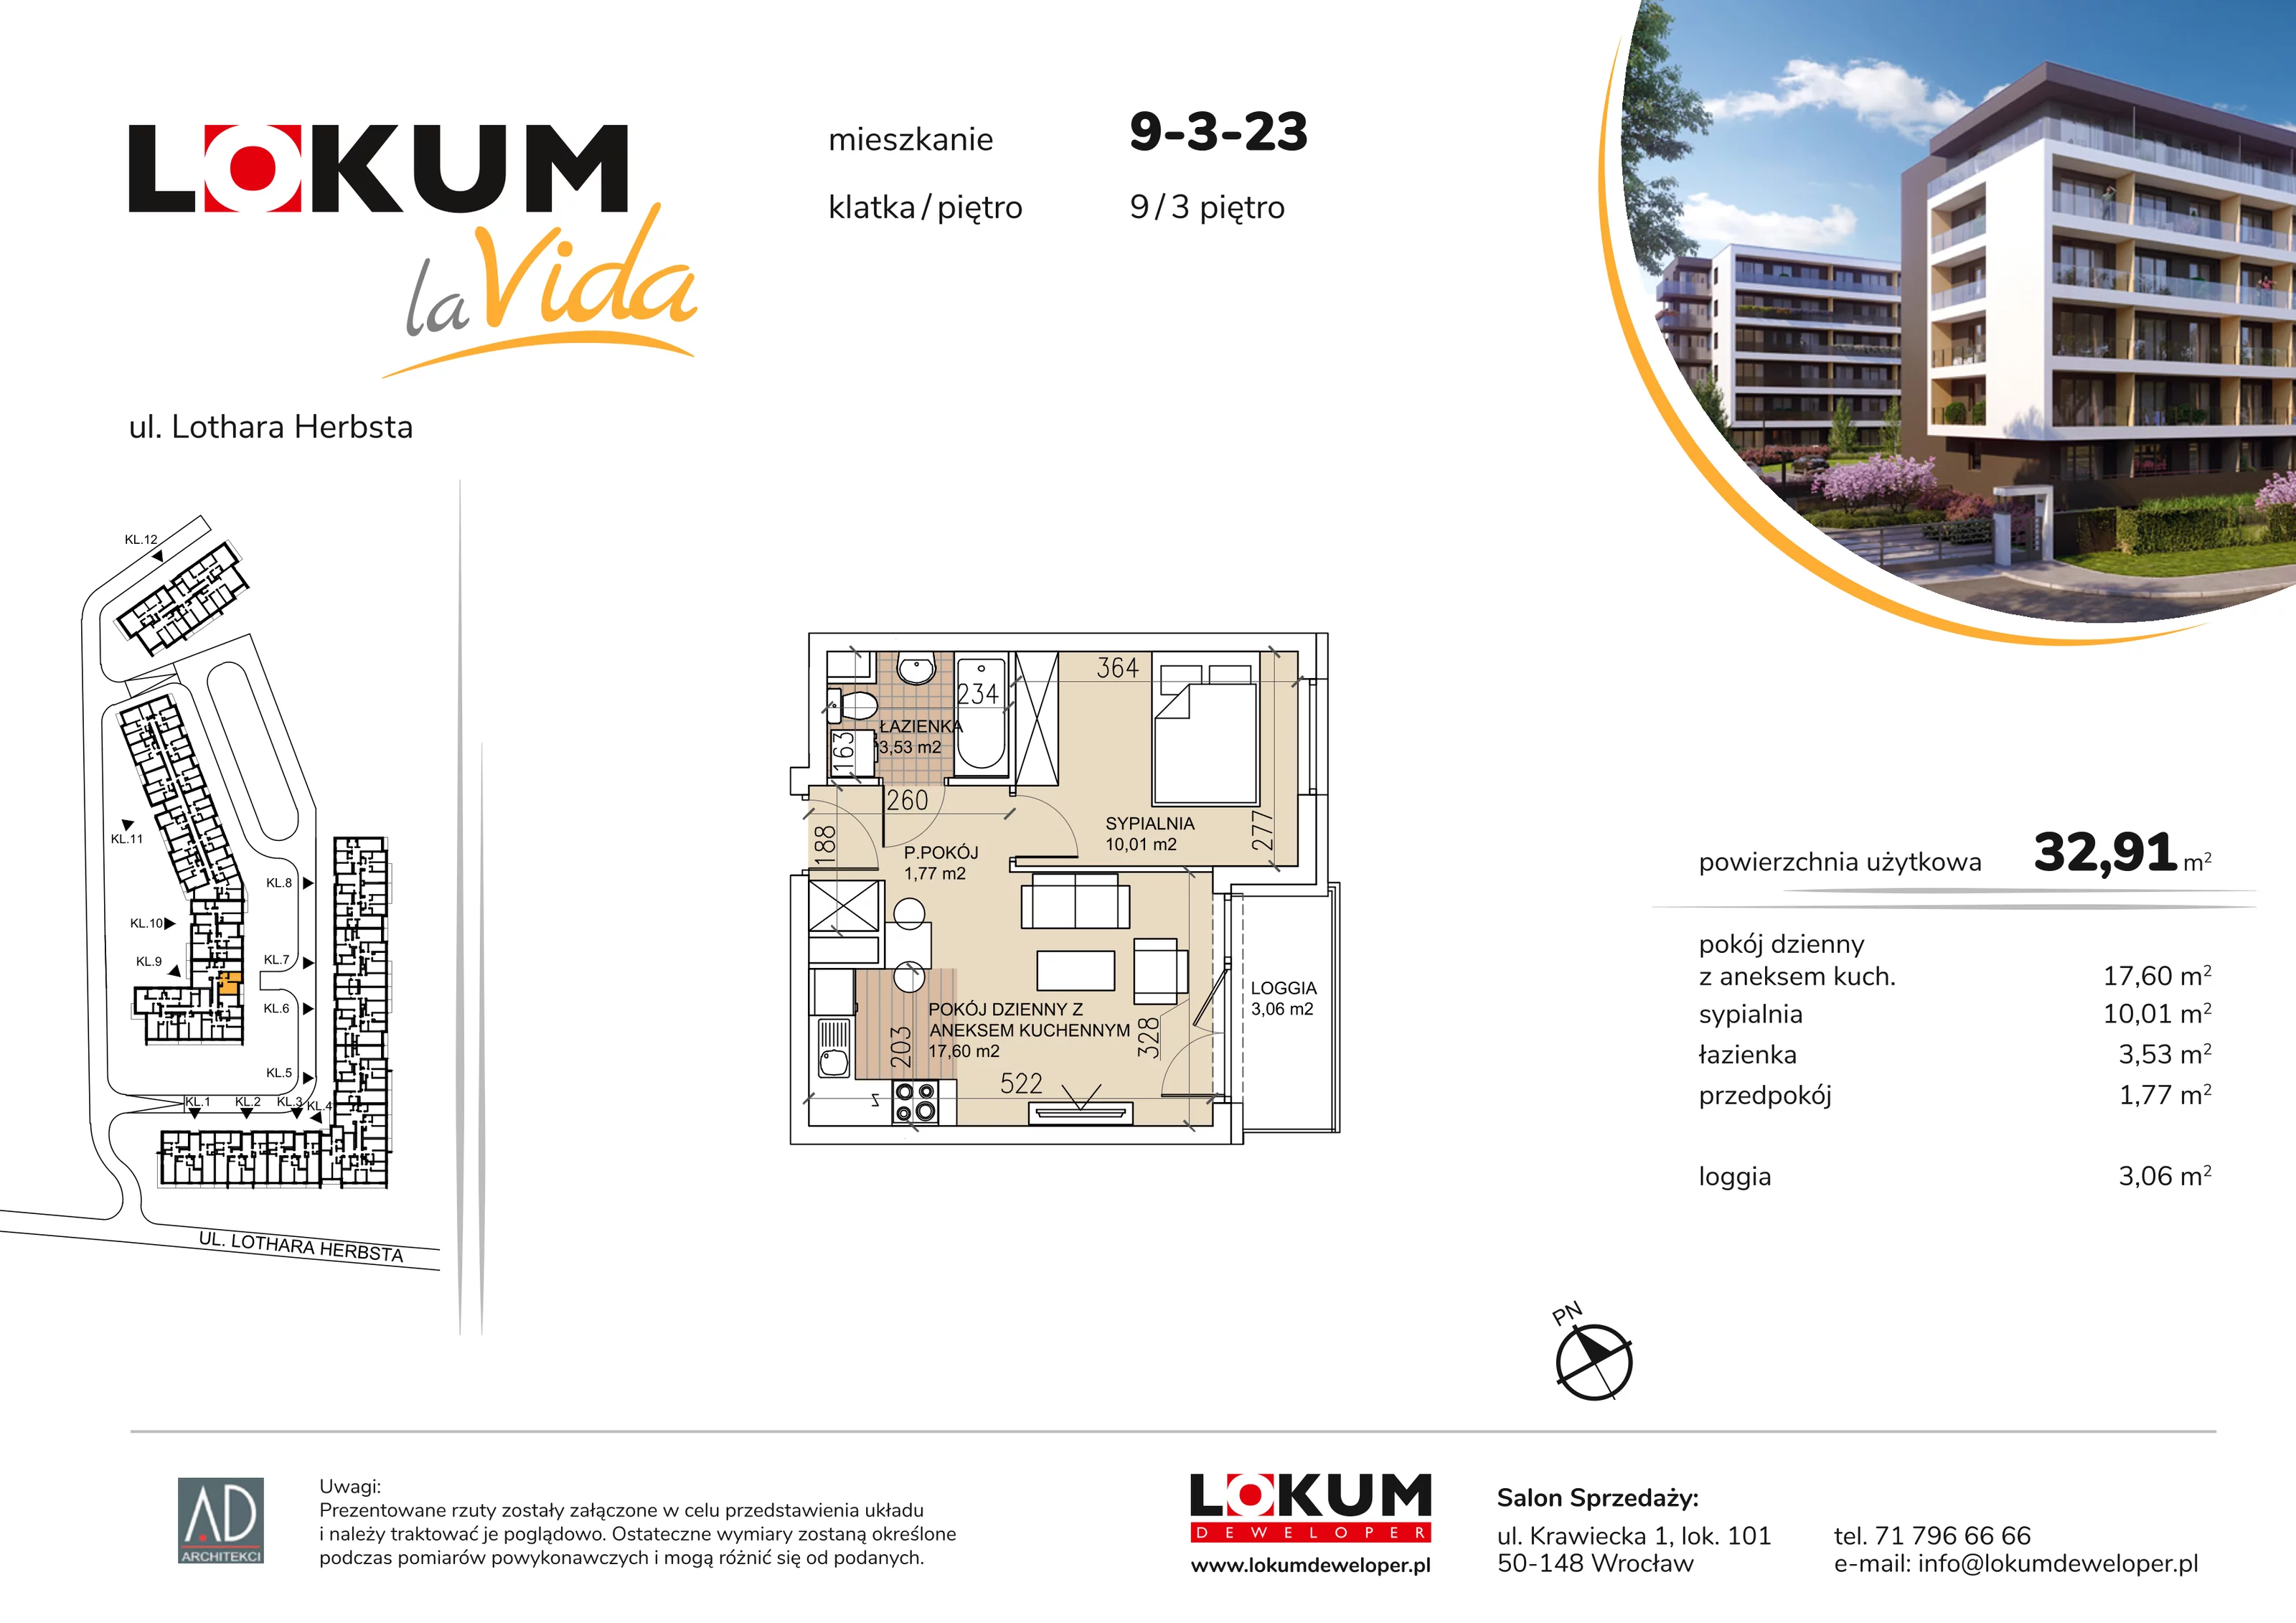 Mieszkanie 32,91 m², piętro 3, oferta nr 9-3-23, Lokum la Vida, Wrocław, Sołtysowice, ul. Lothara Herbsta